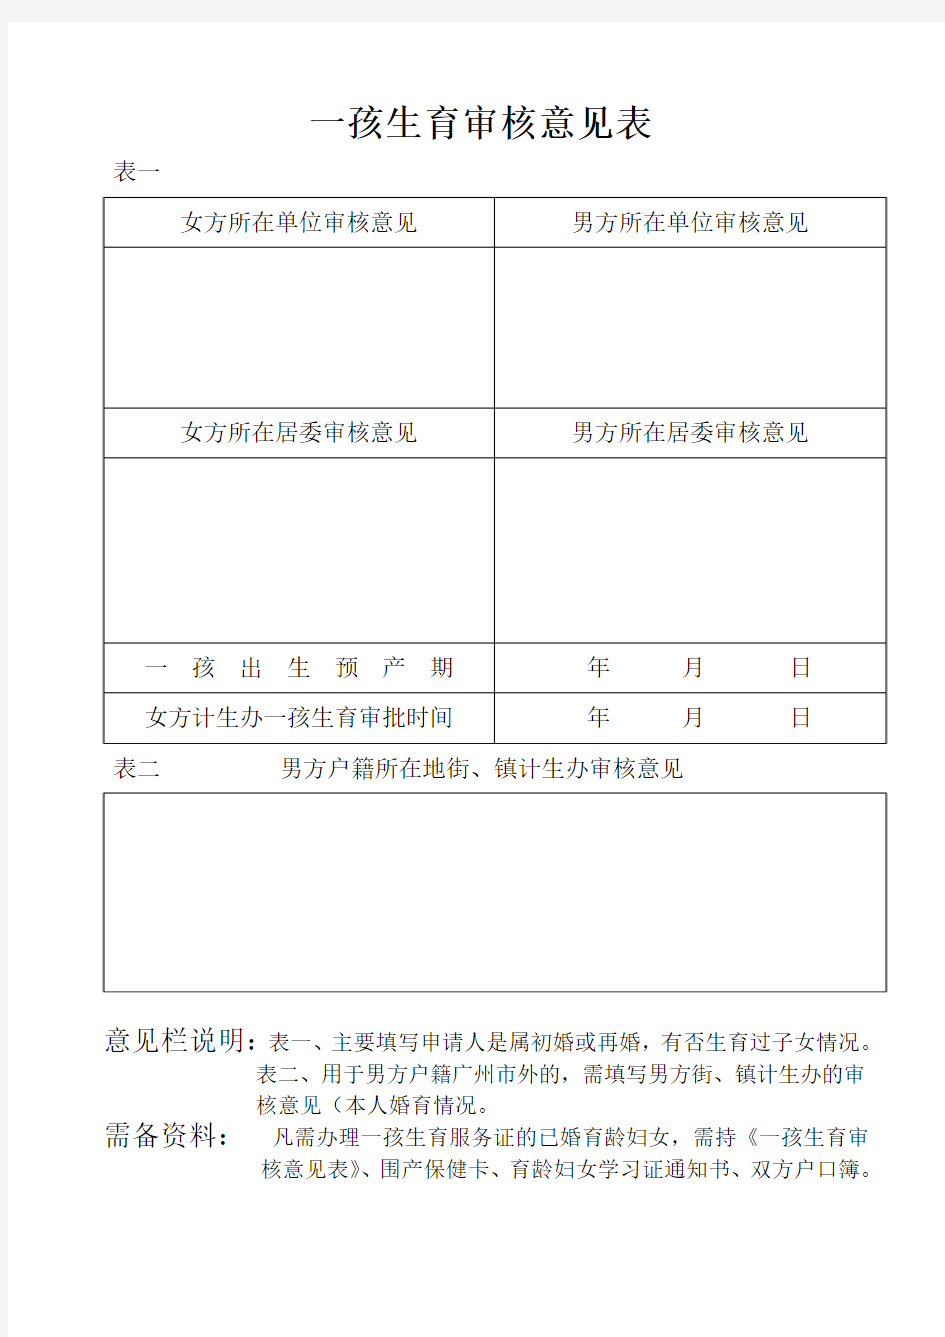 领取《广东省计划生育服务证》登记表